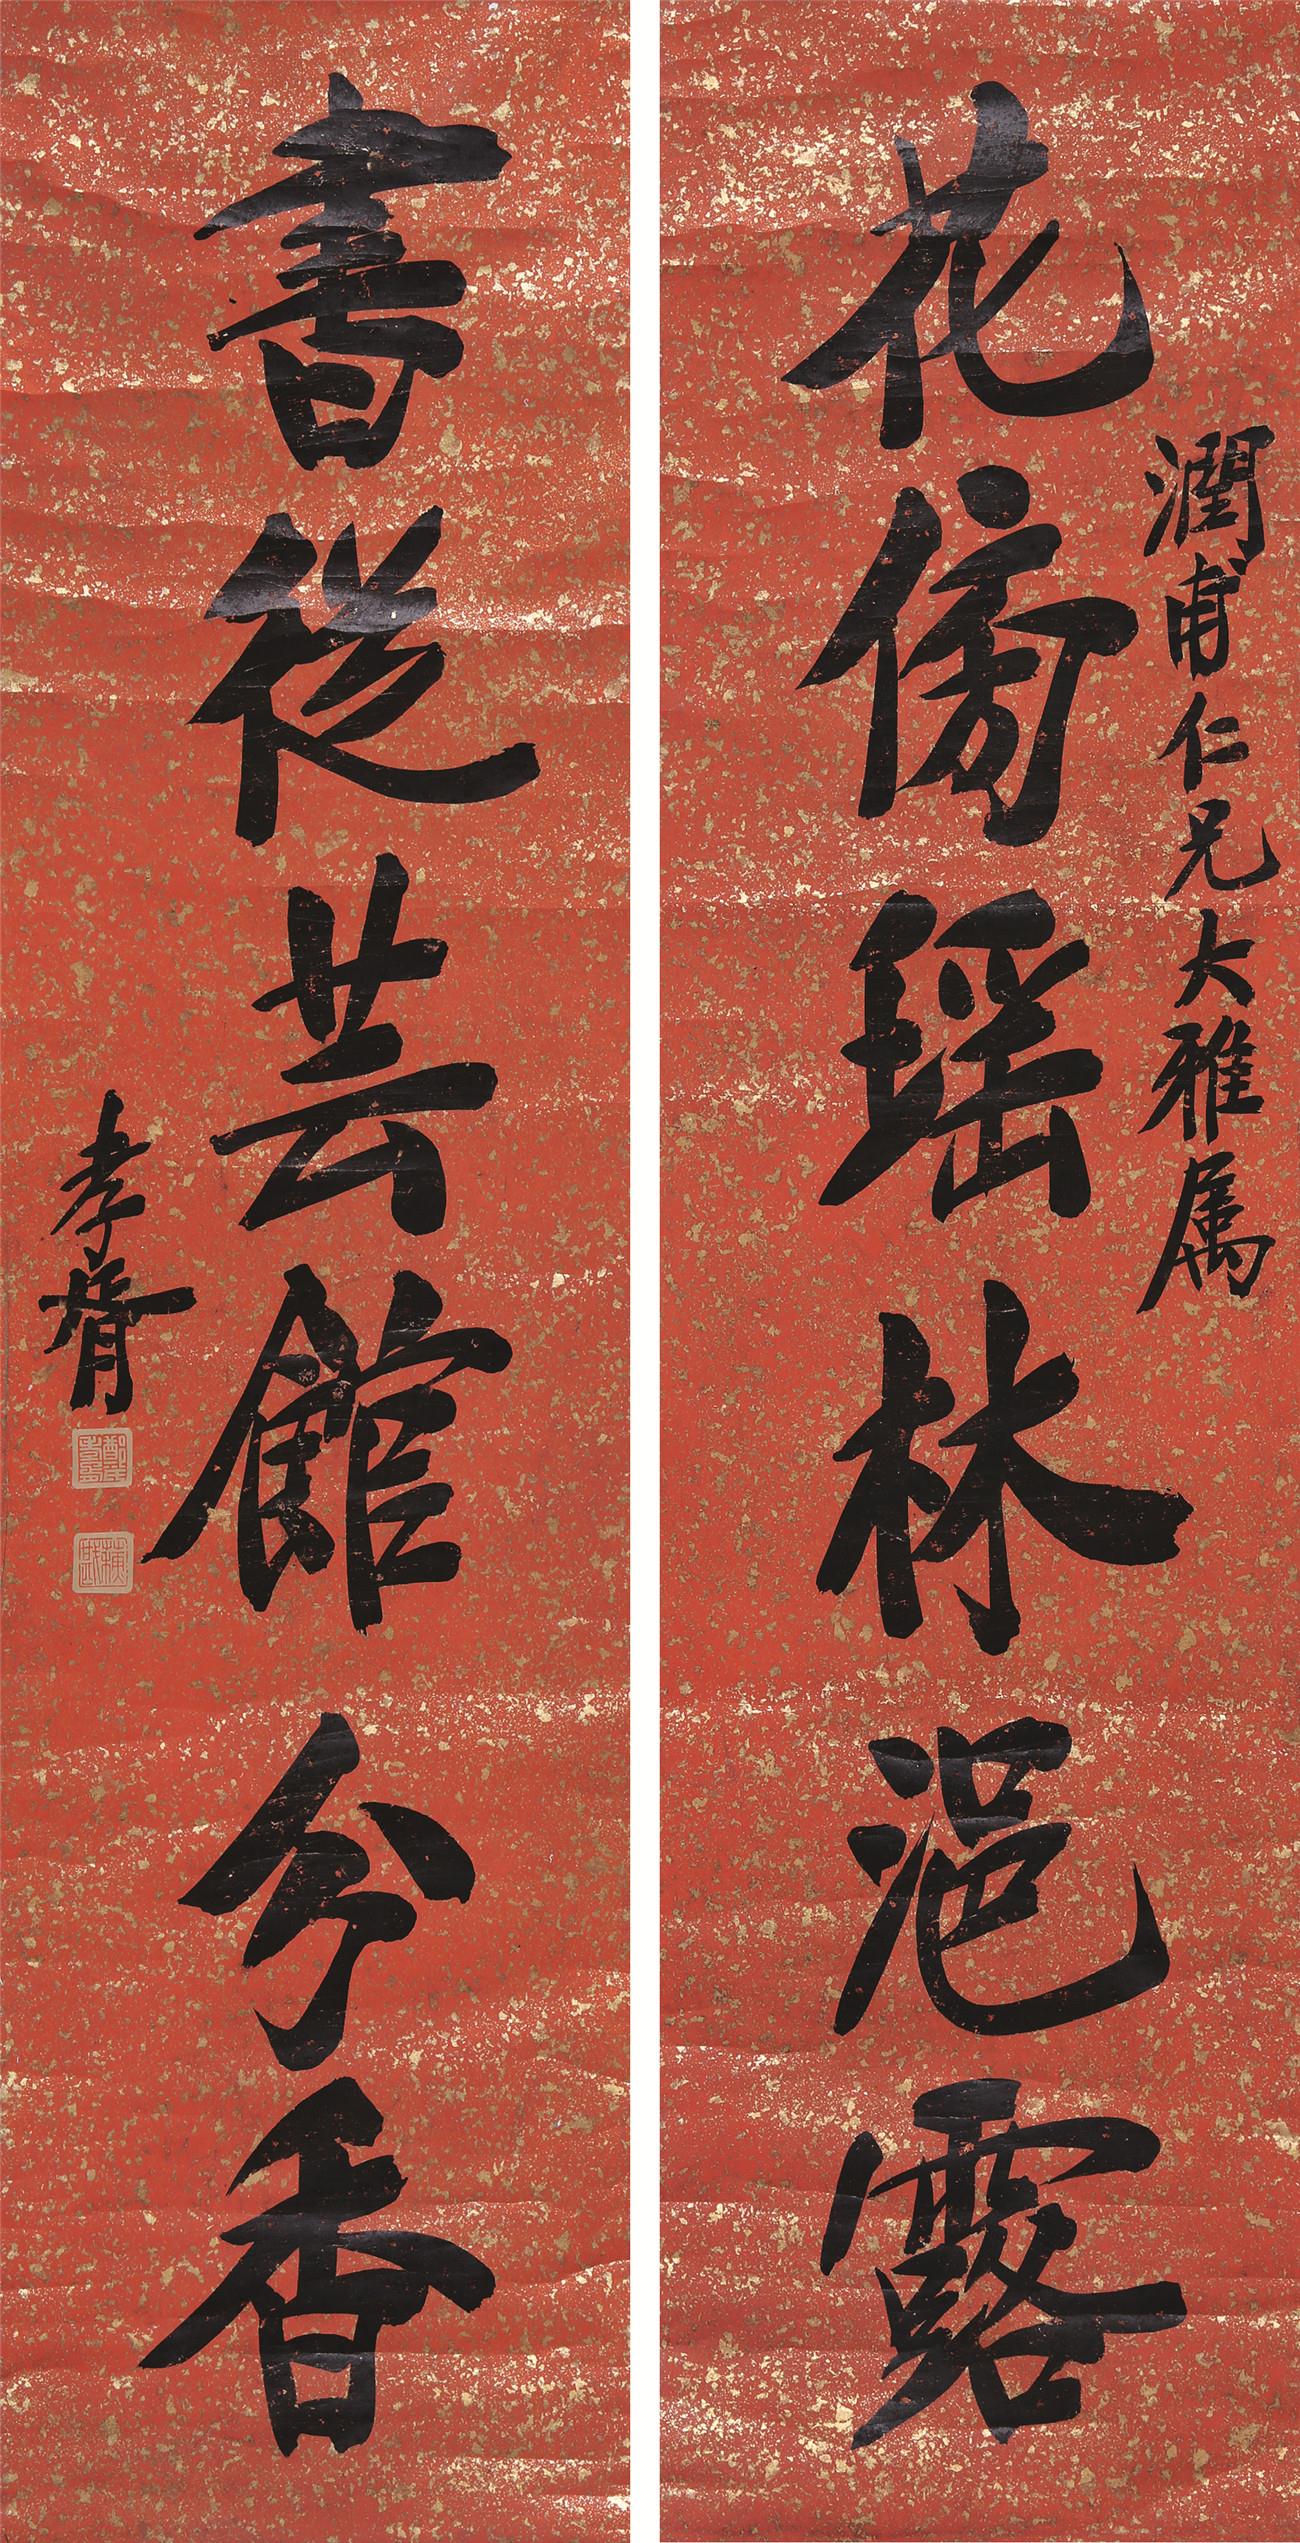 郑孝胥(1860-1938)行书六言联